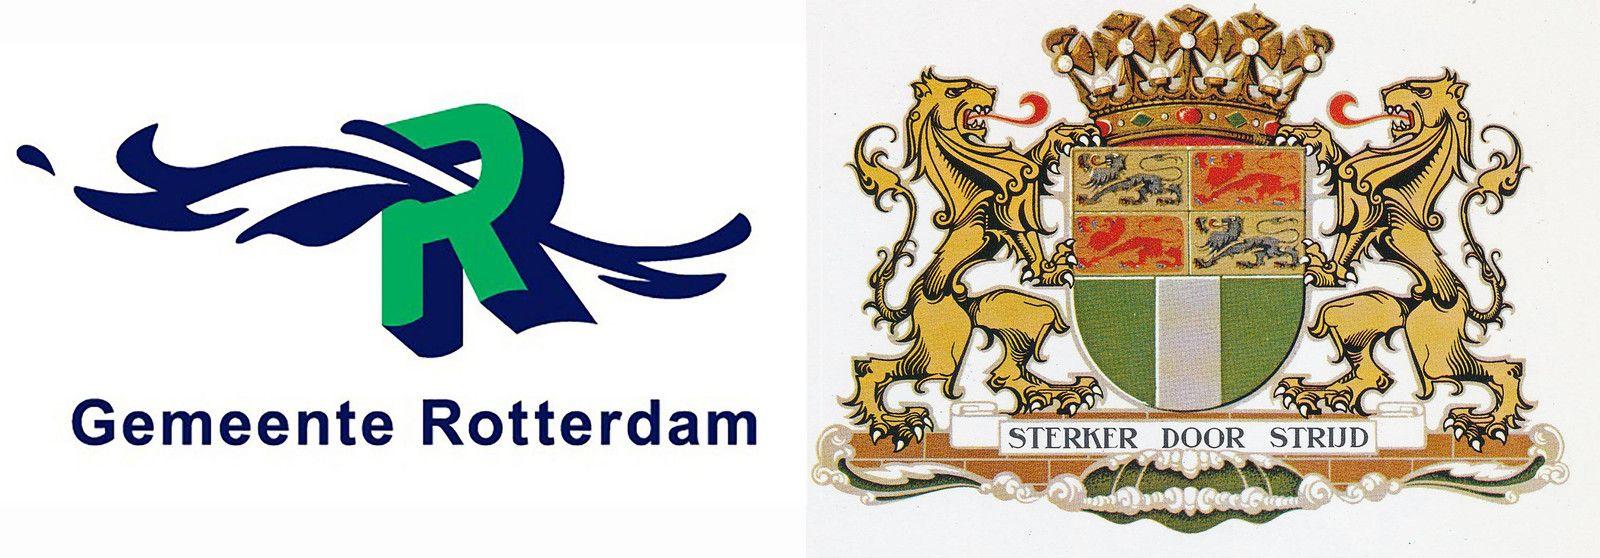 Rotterdam Logo - Oersterk stadswapen moet nieuwe logo Rotterdam zijn'